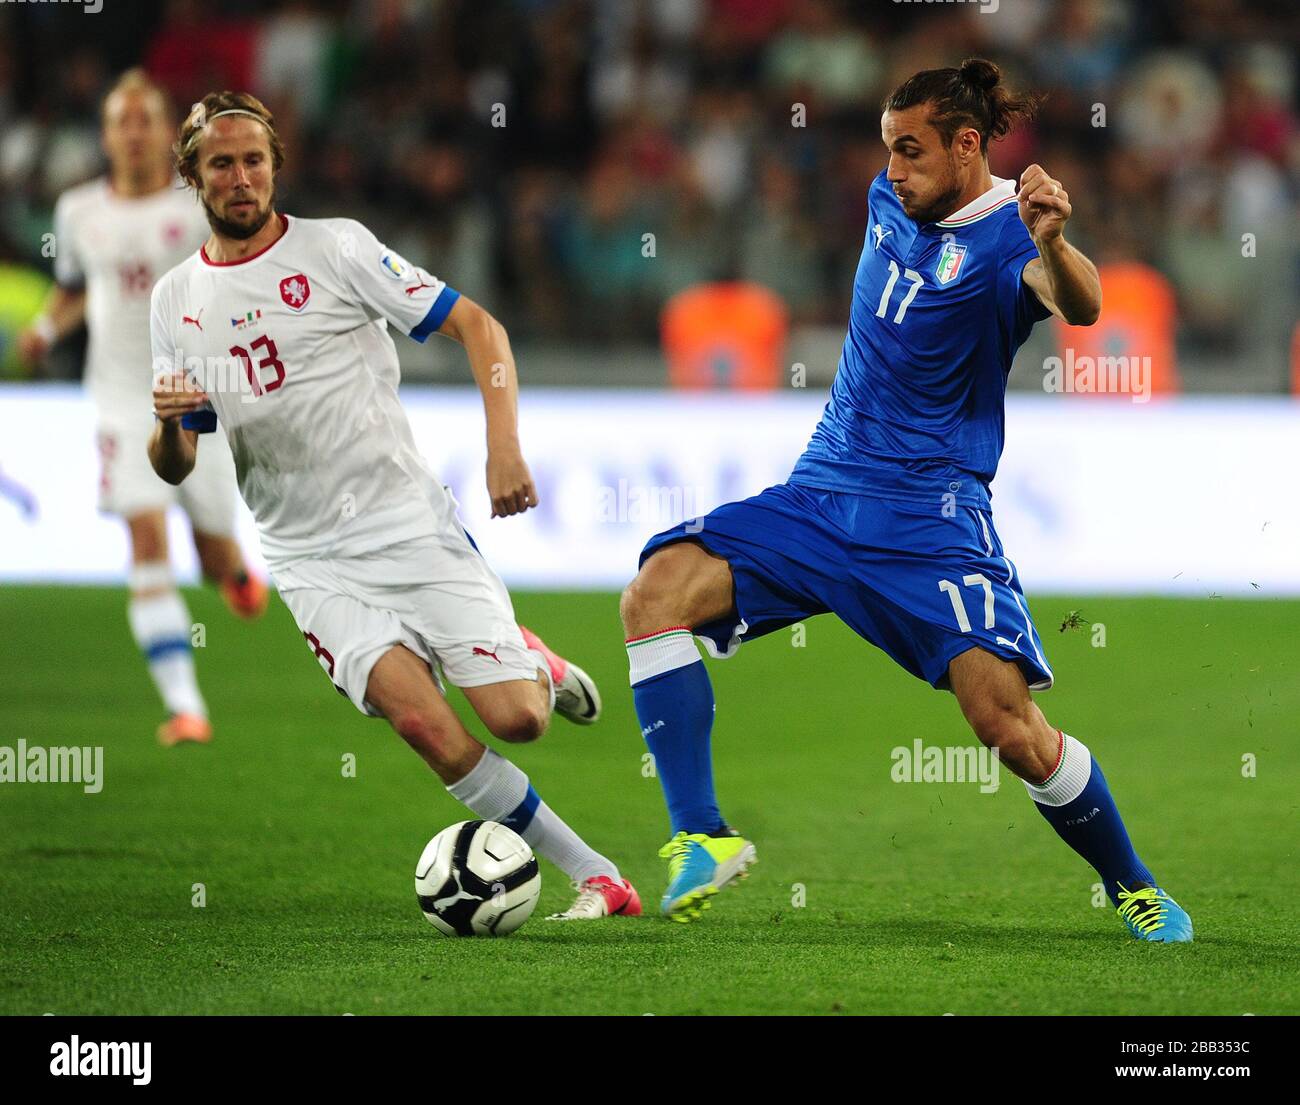 Italy's Pablo Osvaldo (right) and Czech Republic's Jaroslav Plasil (left) battle for the ball Stock Photo